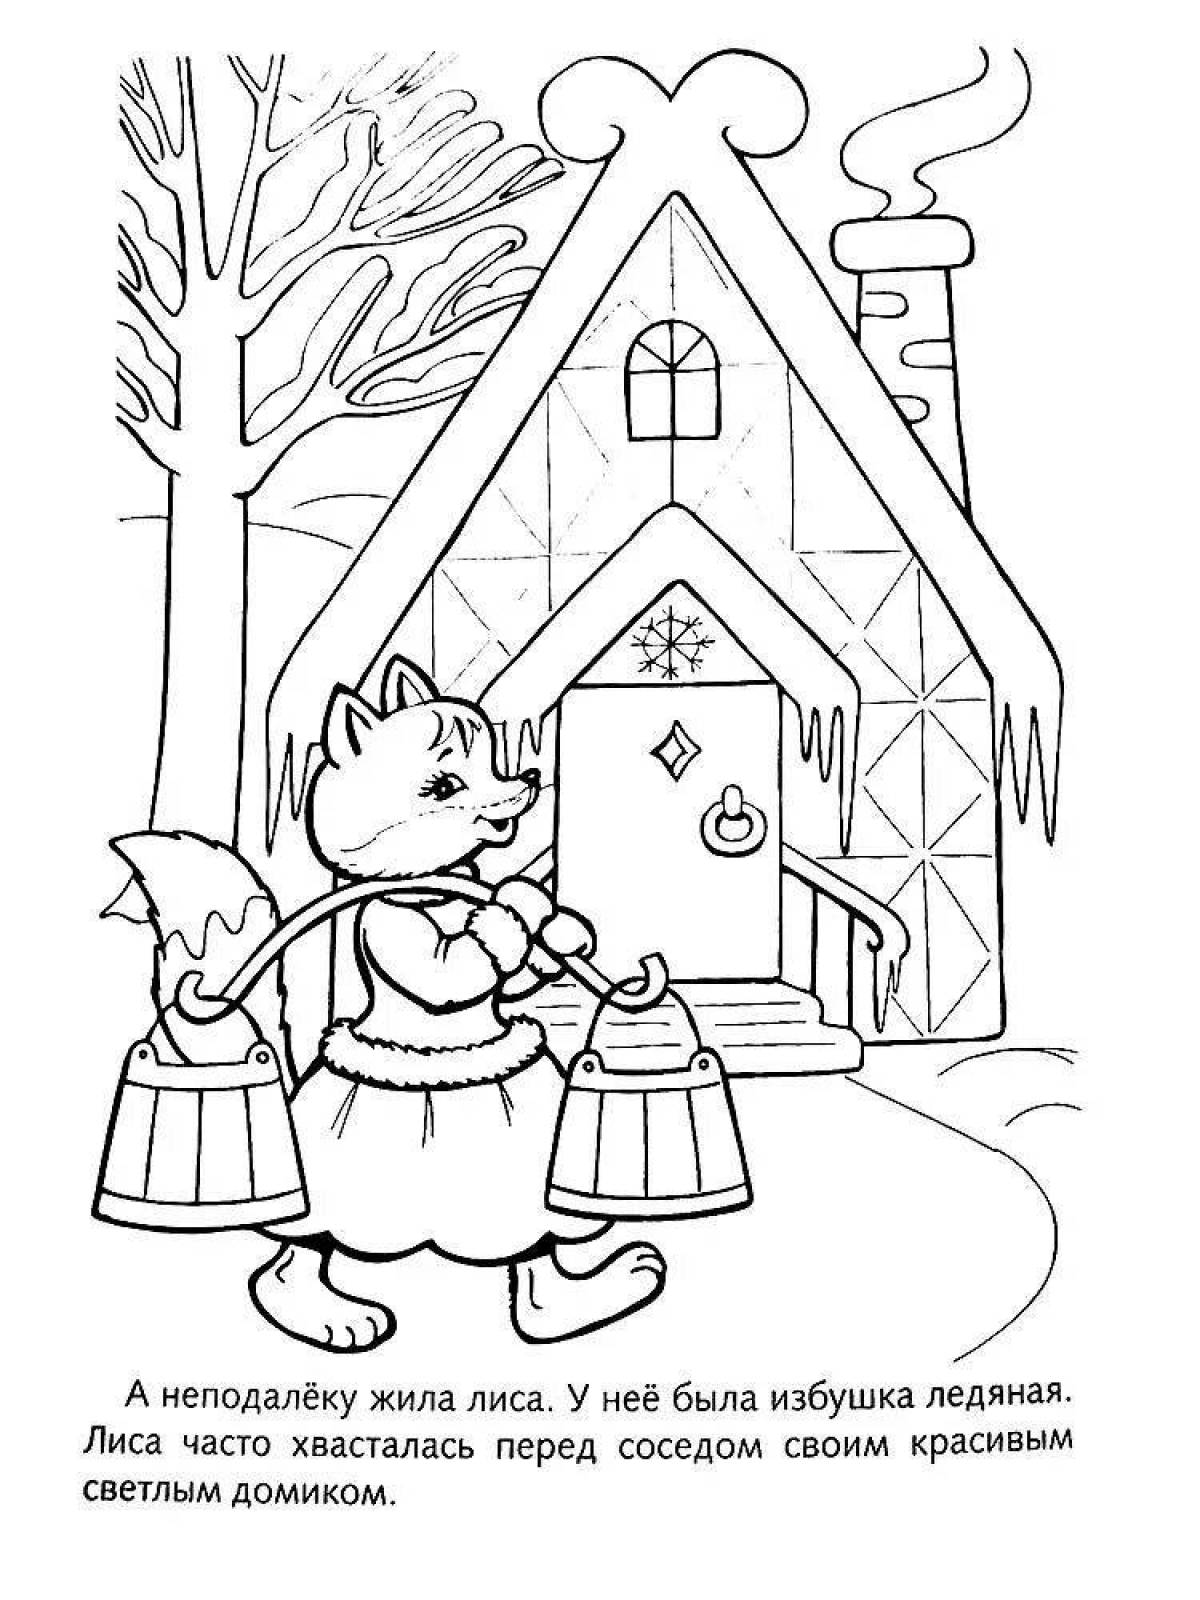 Funny rabbit hut coloring book